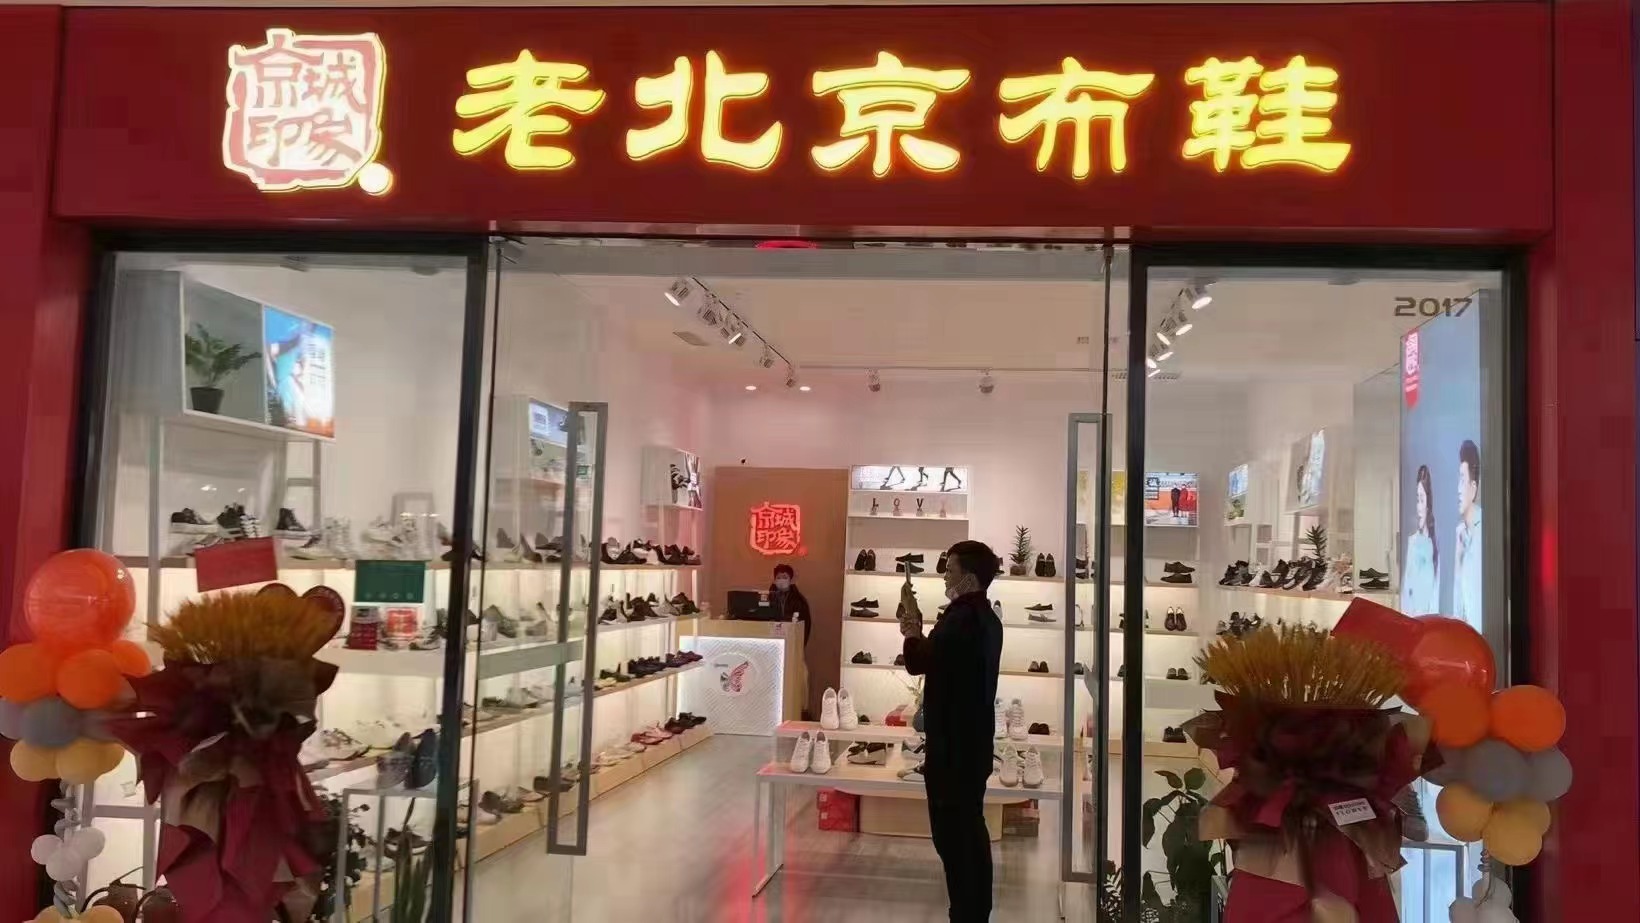 贺：京城印象老北京布鞋加盟店江苏周老板盛大开业！